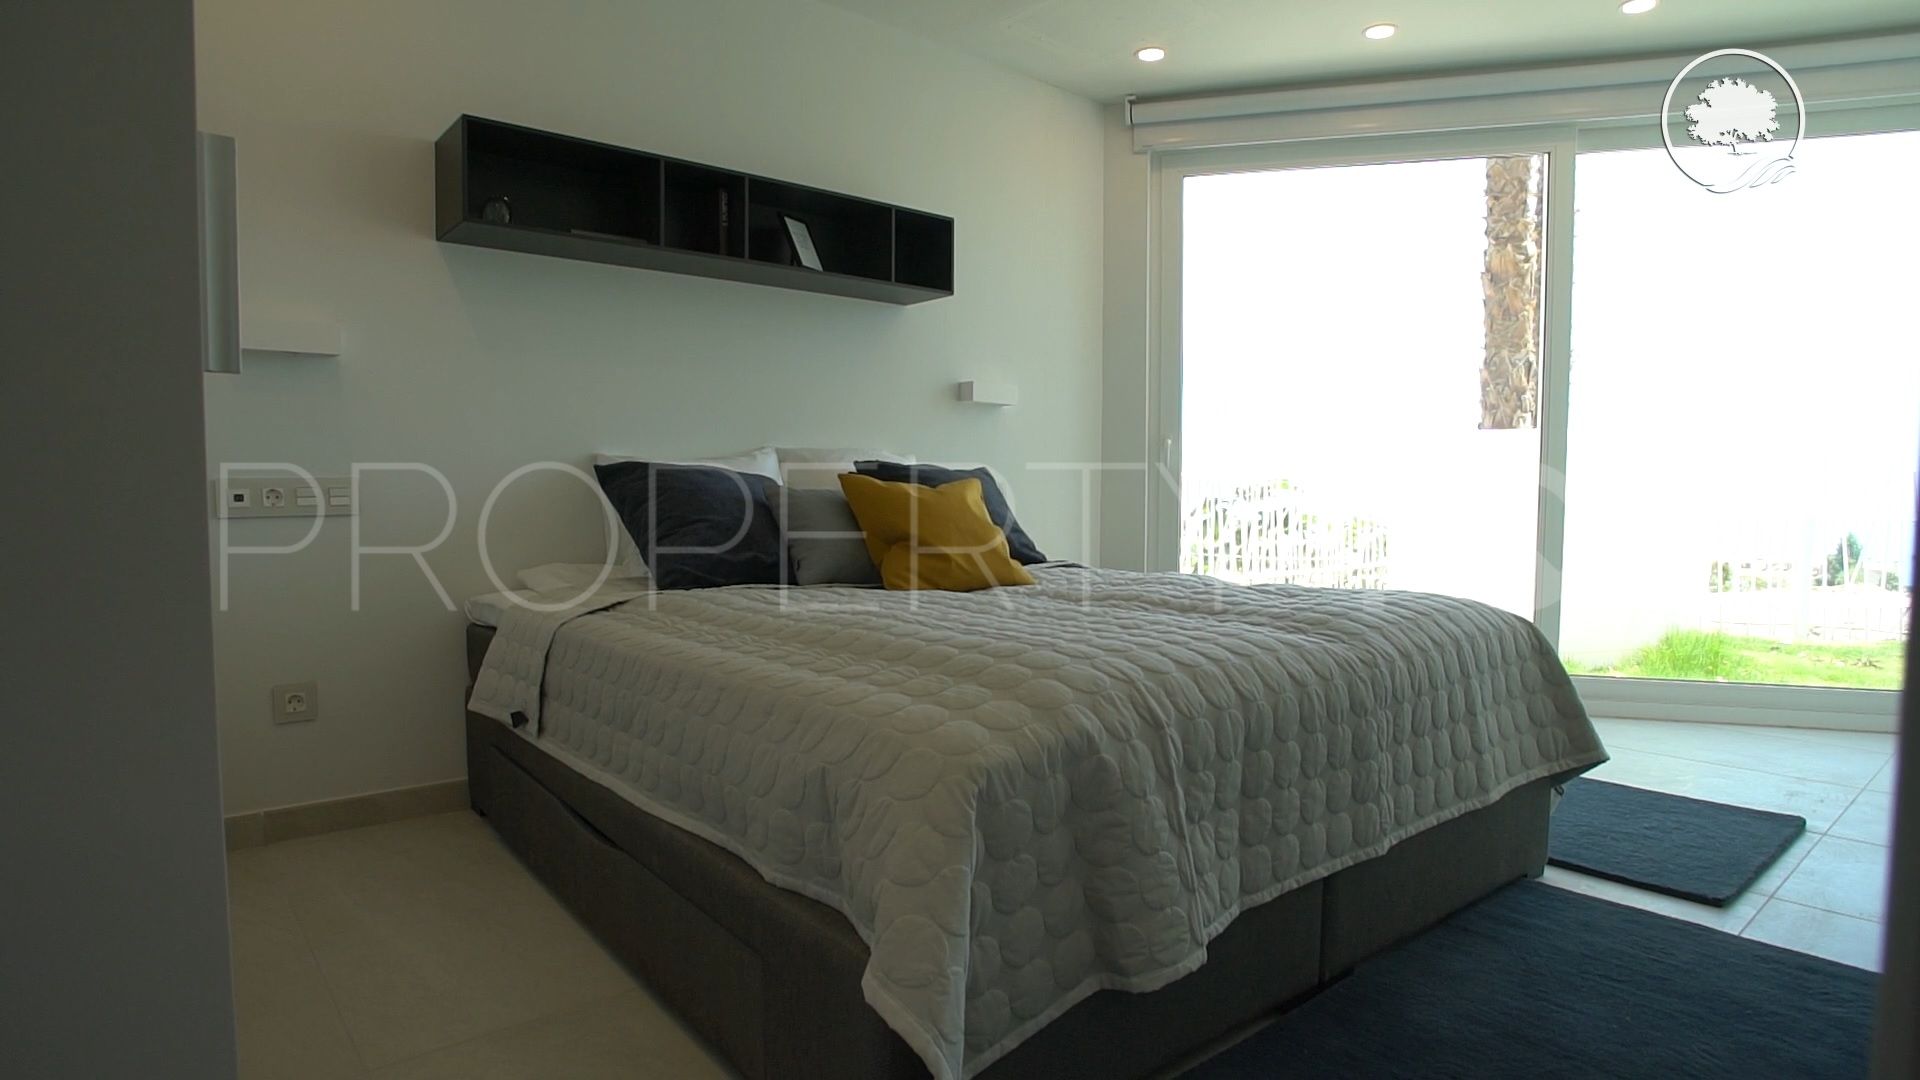 For sale villa in El Higueron with 6 bedrooms